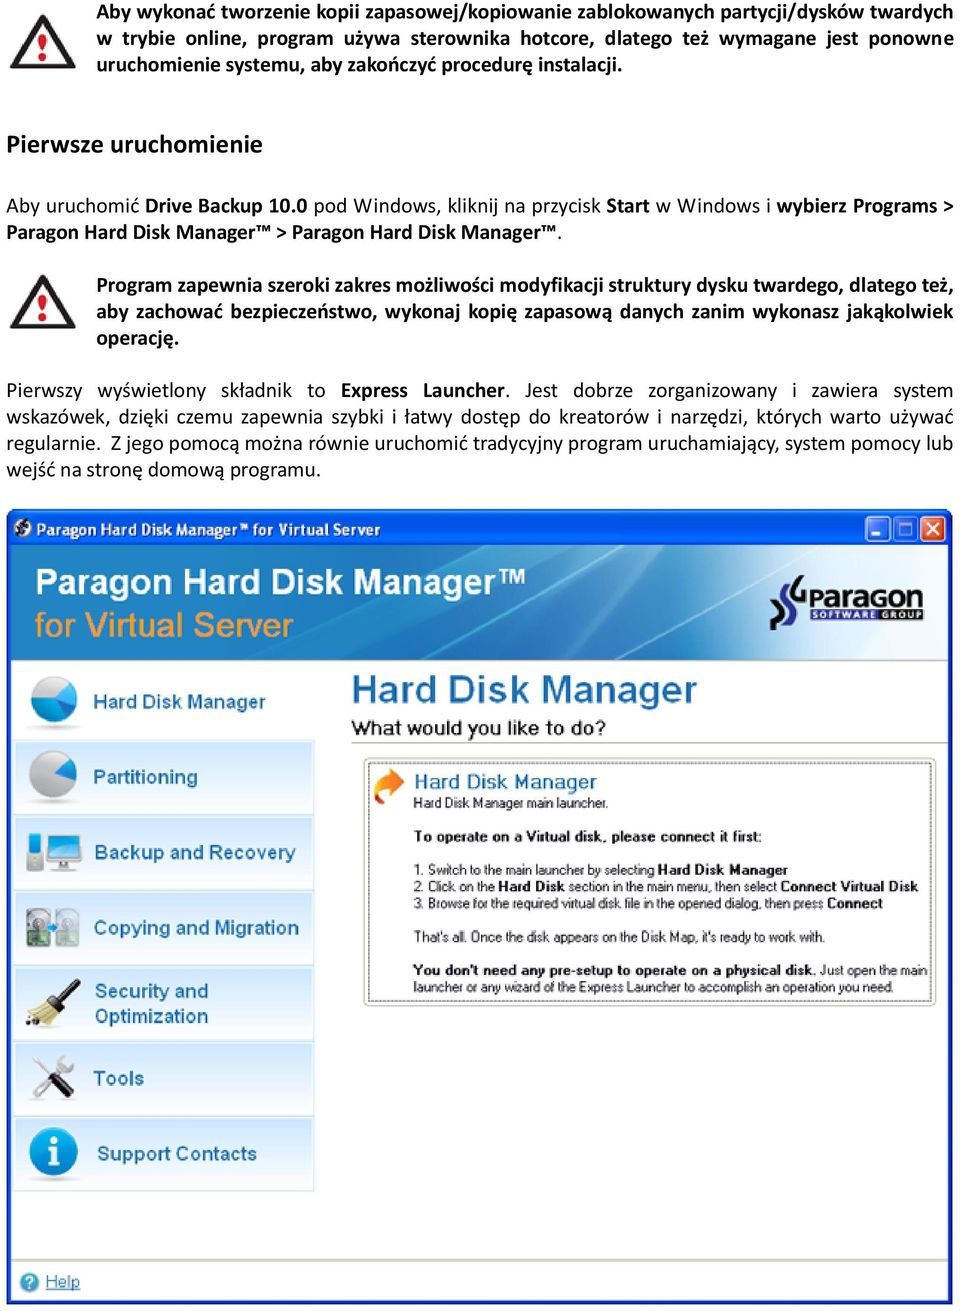 0 pod Windows, kliknij na przycisk Start w Windows i wybierz Programs > Paragon Hard Disk Manager > Paragon Hard Disk Manager.